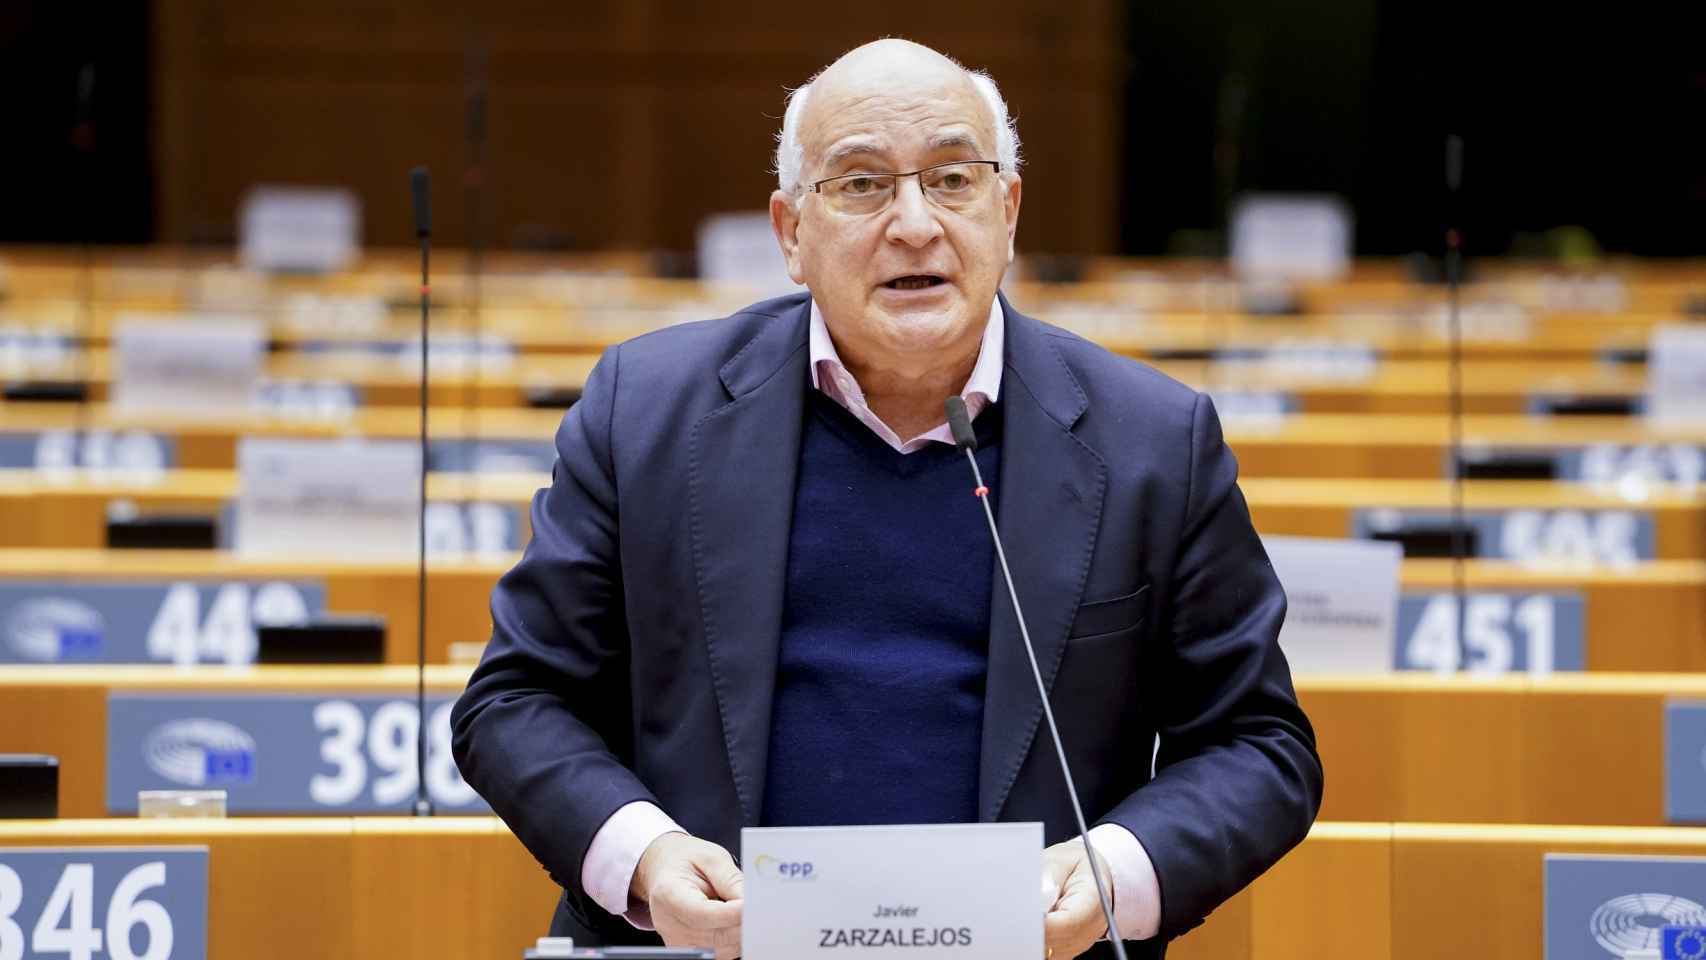 El eurodiputado del Partido Popular Europeo, Javier Zarzalejos